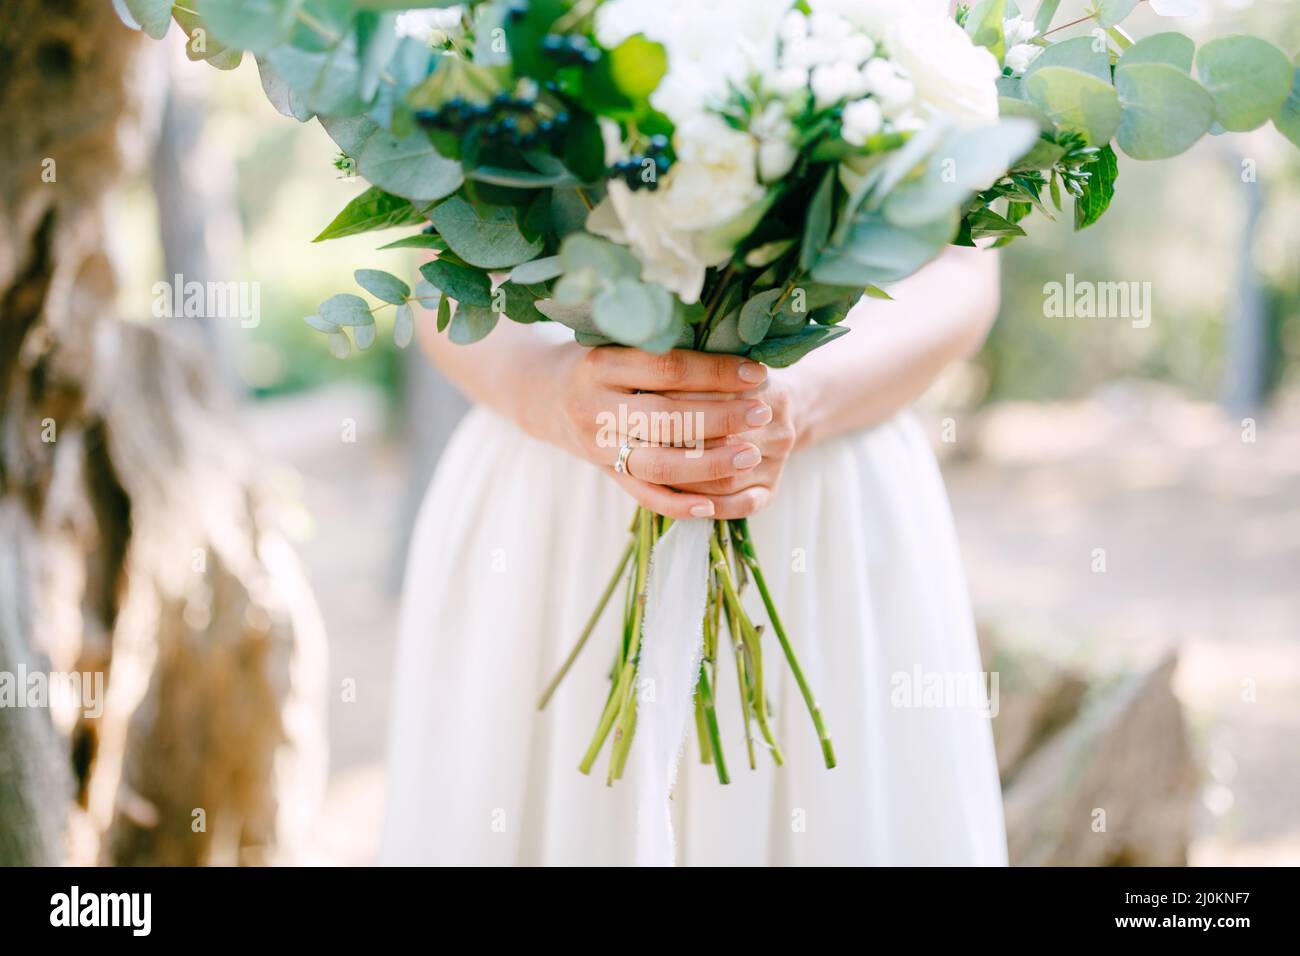 Die Braut hält einen Brautstrauß aus Rosen, Eukalyptuszweigen, zarten weißen Blumen und dunklen Beeren in ihren Händen, clos Stockfoto